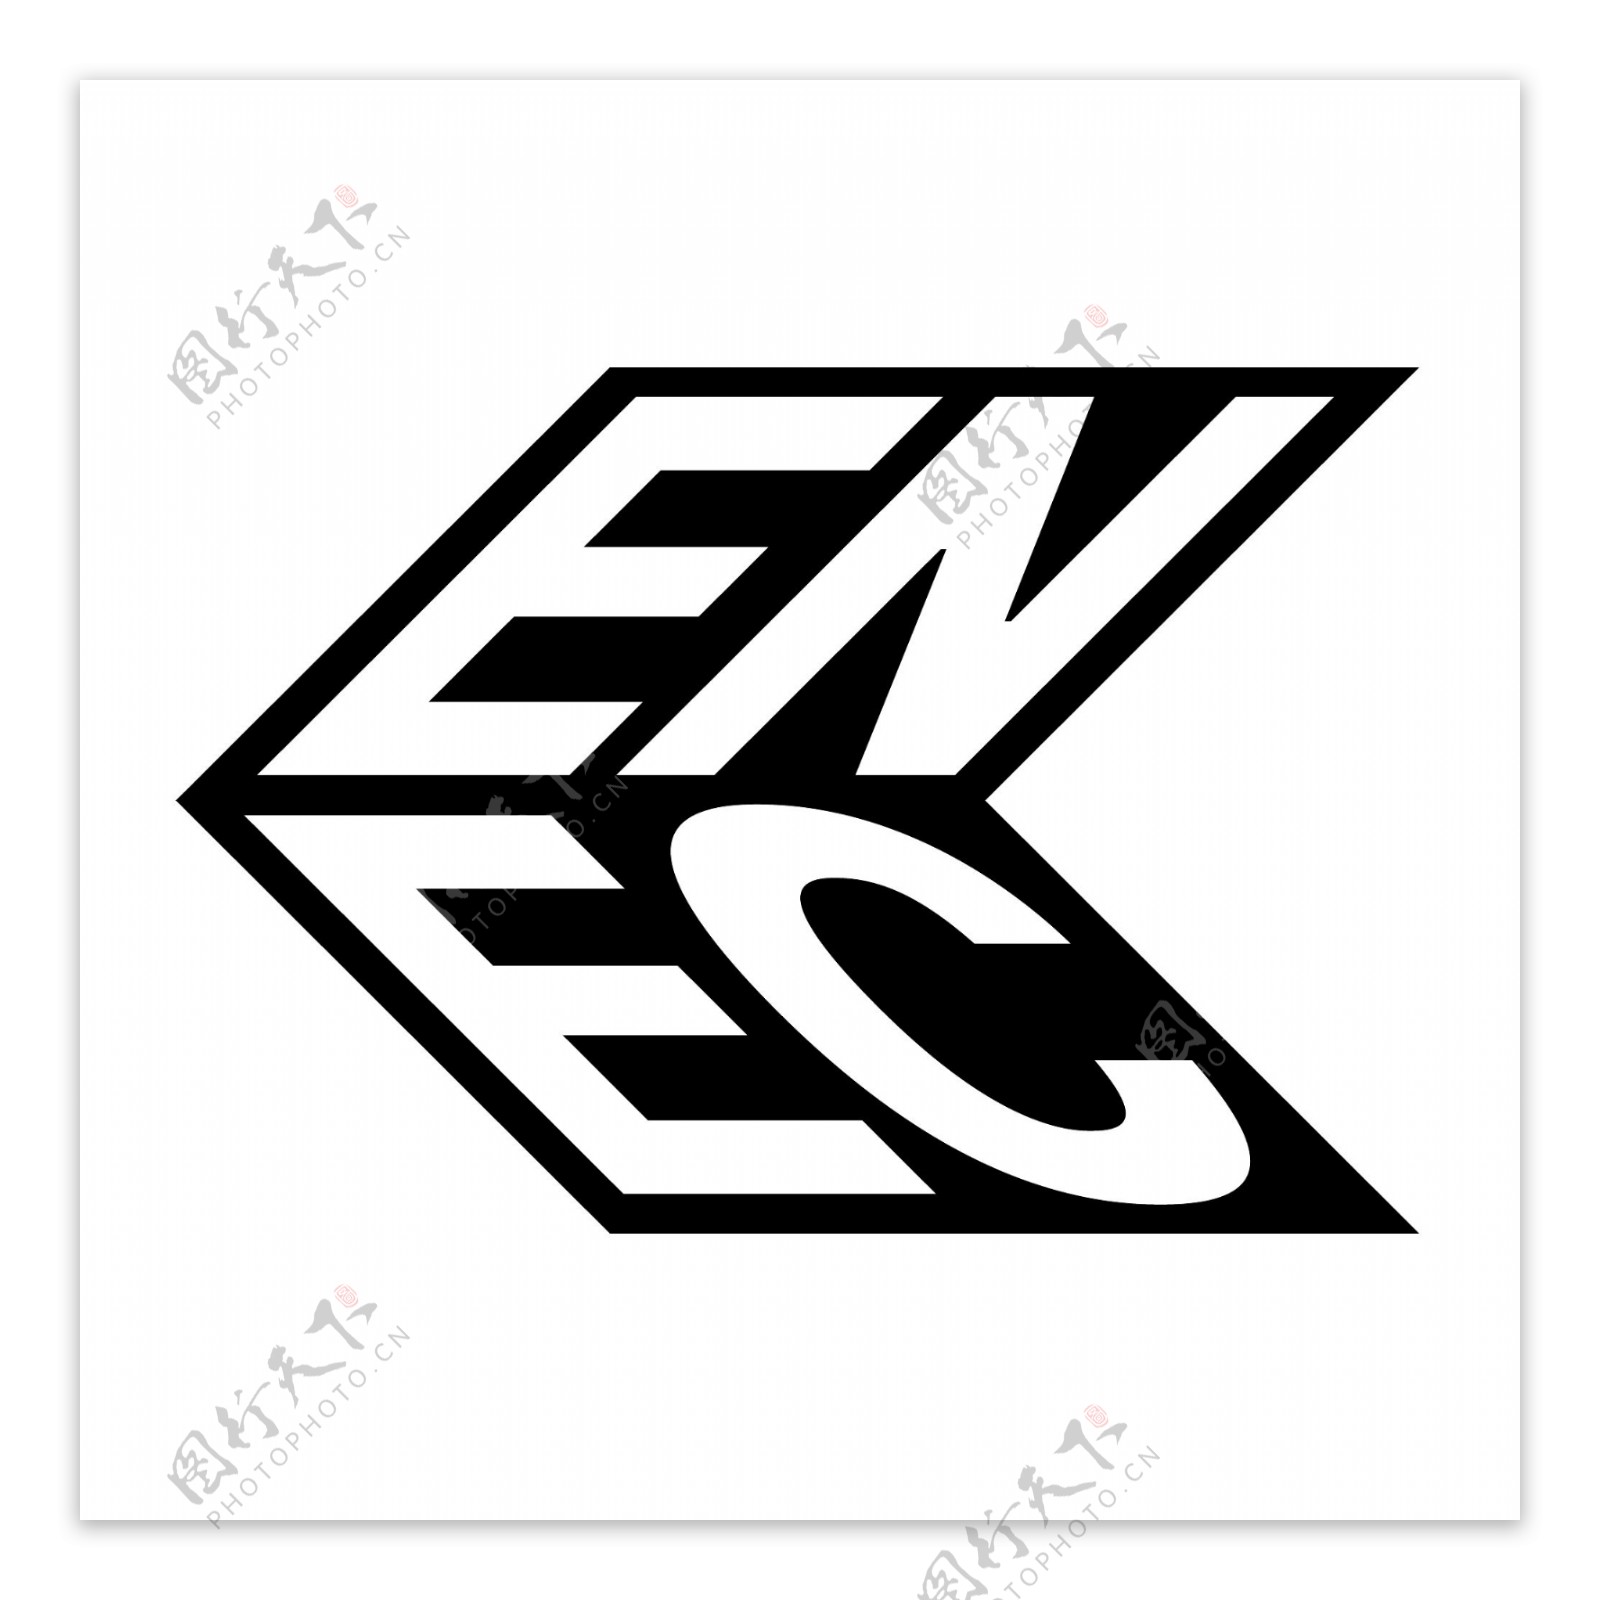 ENEC